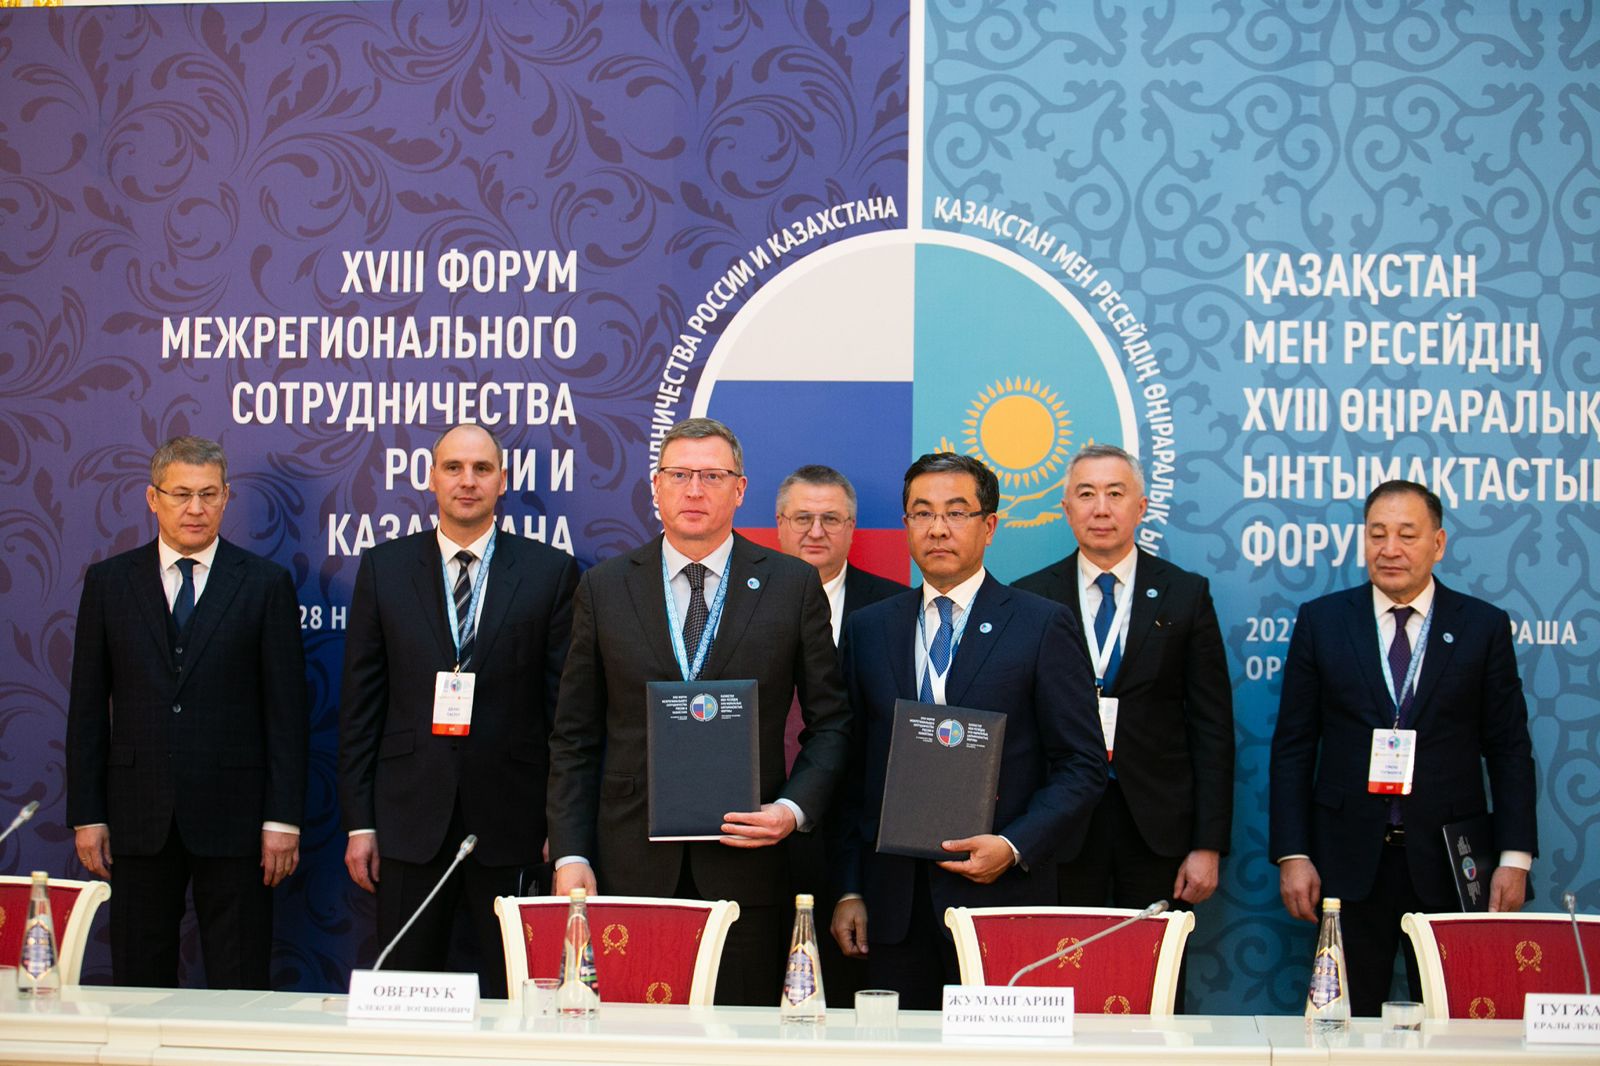 Главы Омской области и казахстанского региона Абай договорились о сотрудничестве